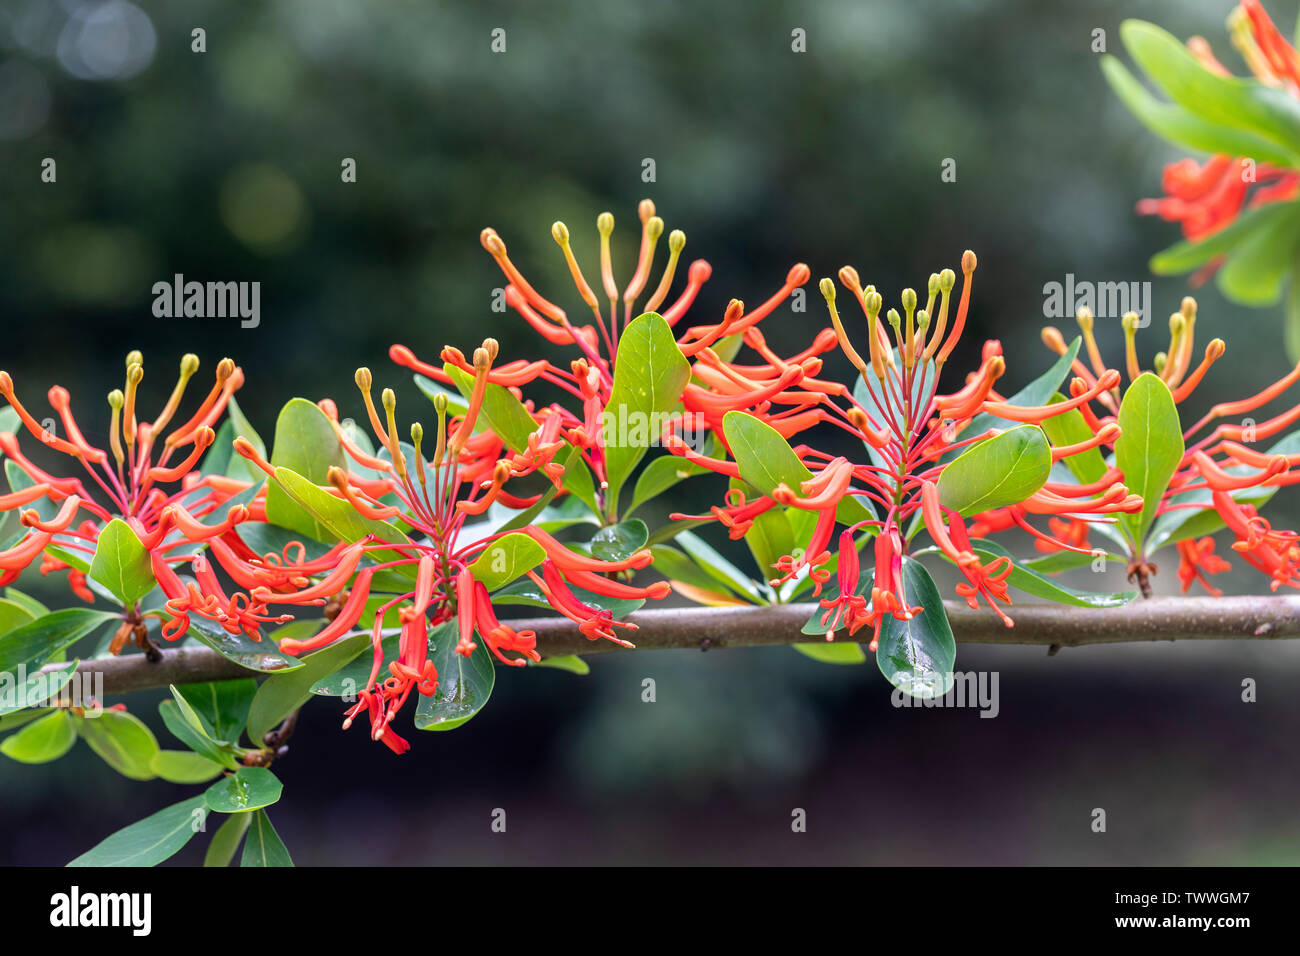 Nahaufnahme von Embothrium coccineum - chilenischer Feuerbusch blüht in einem englischen Garten, Großbritannien Stockfoto